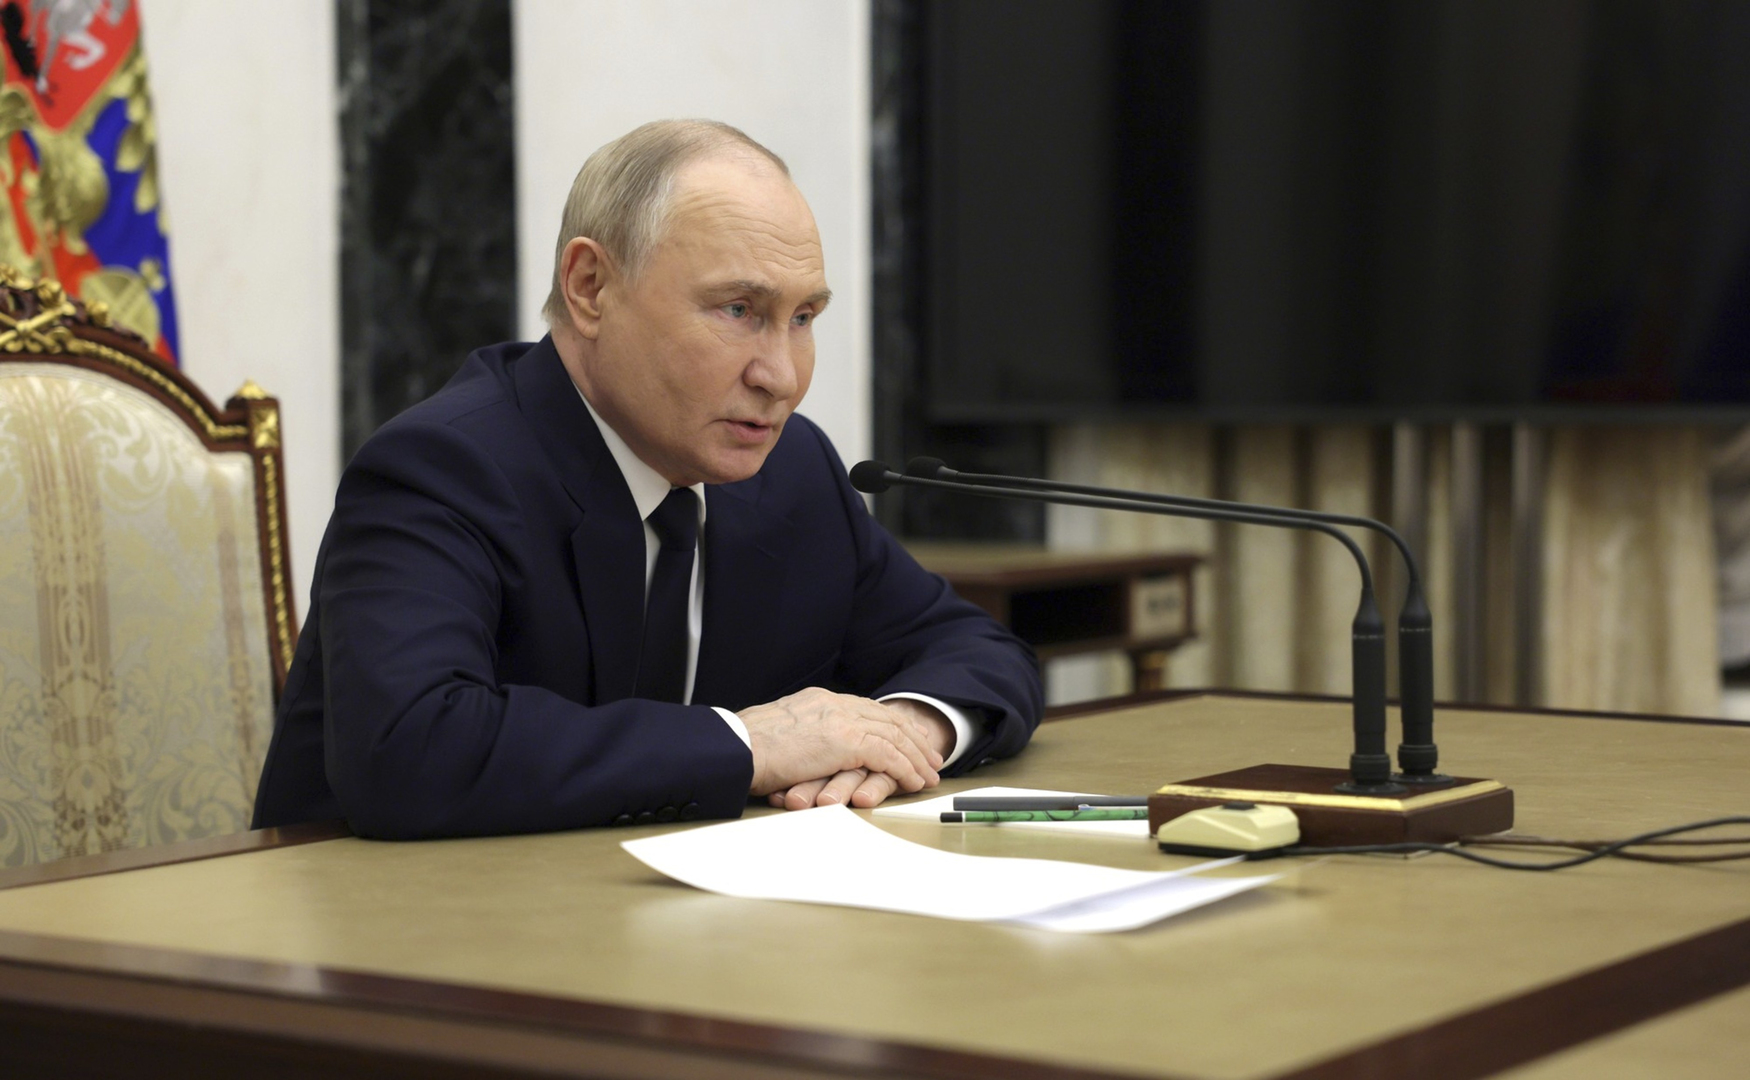 بيسكوف: بوتين يتابع عن كثب الوضع حول حادث مروحية رئيسي